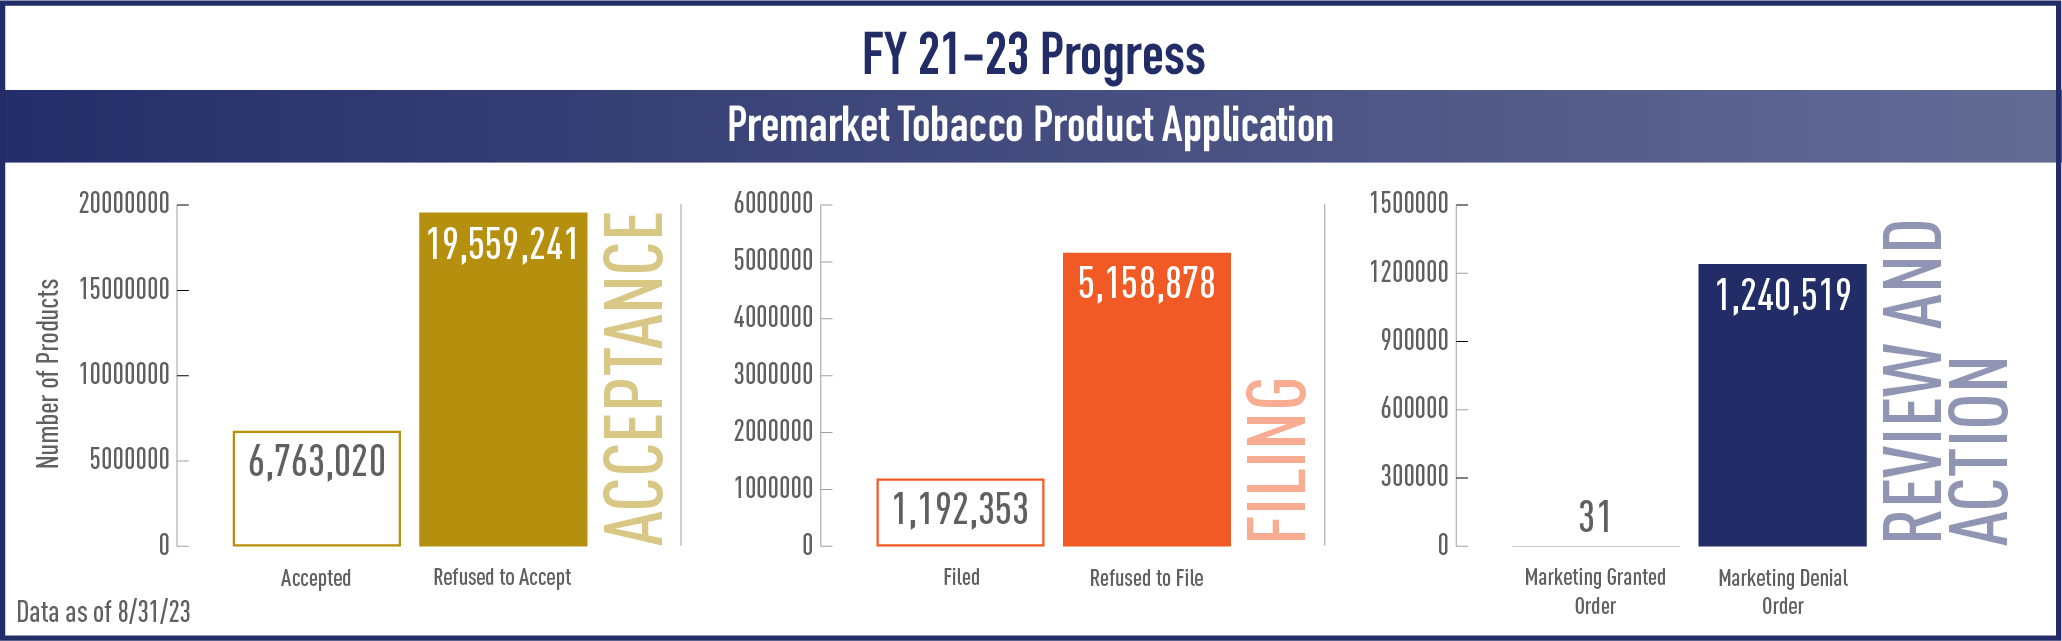 FY 21-23 Progress Premarket Tobacco Product Applications